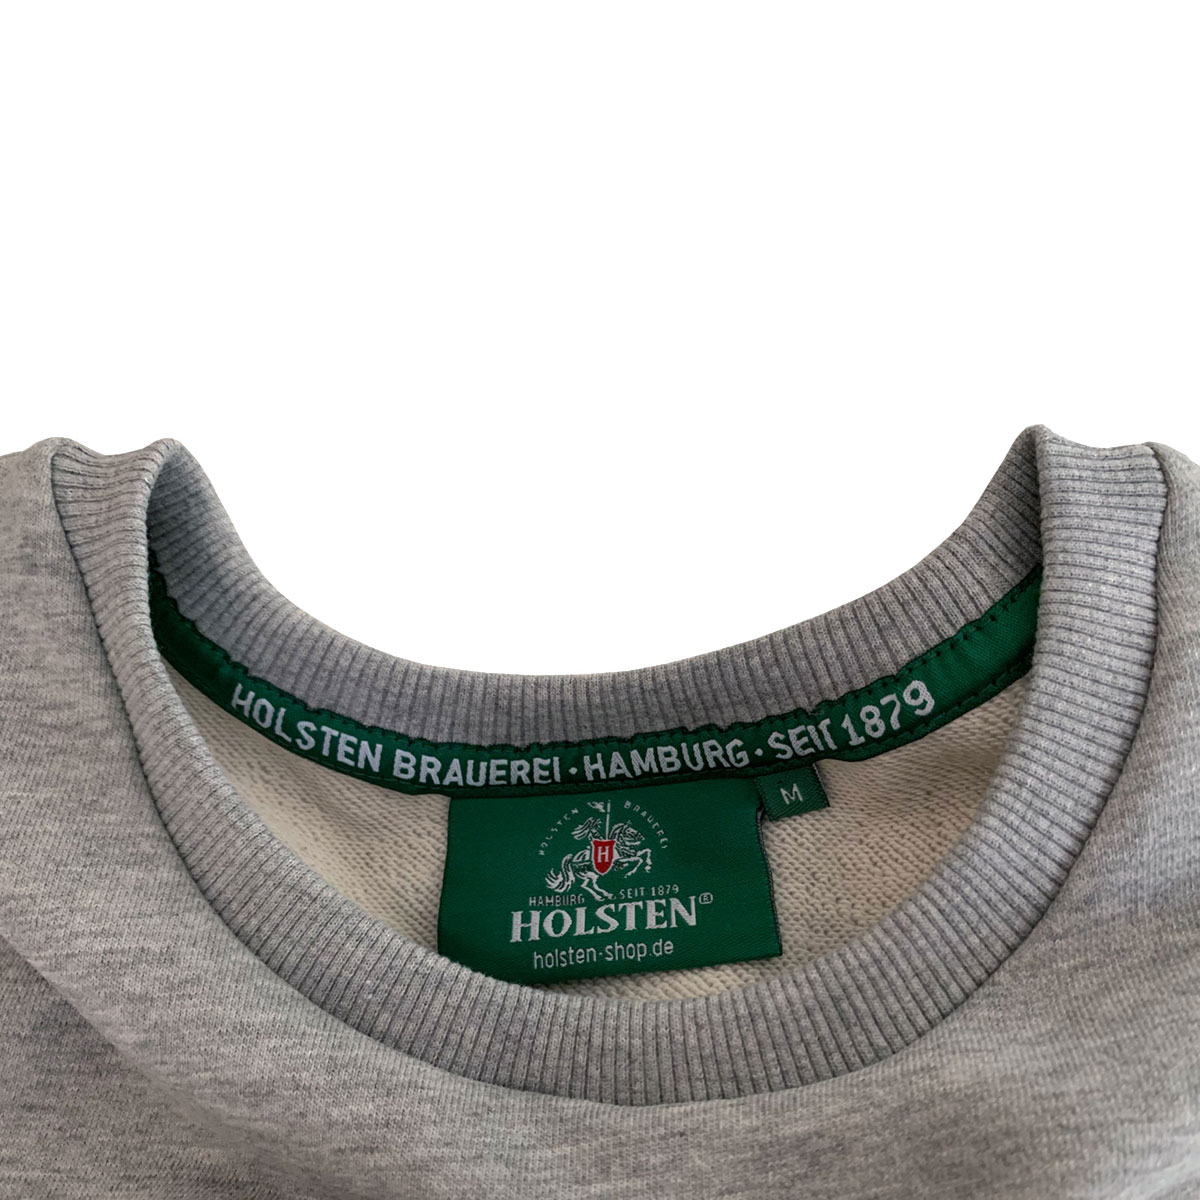 Sweatshirt, unisex, grau-meliert „Seit 1879“ (schwarz)